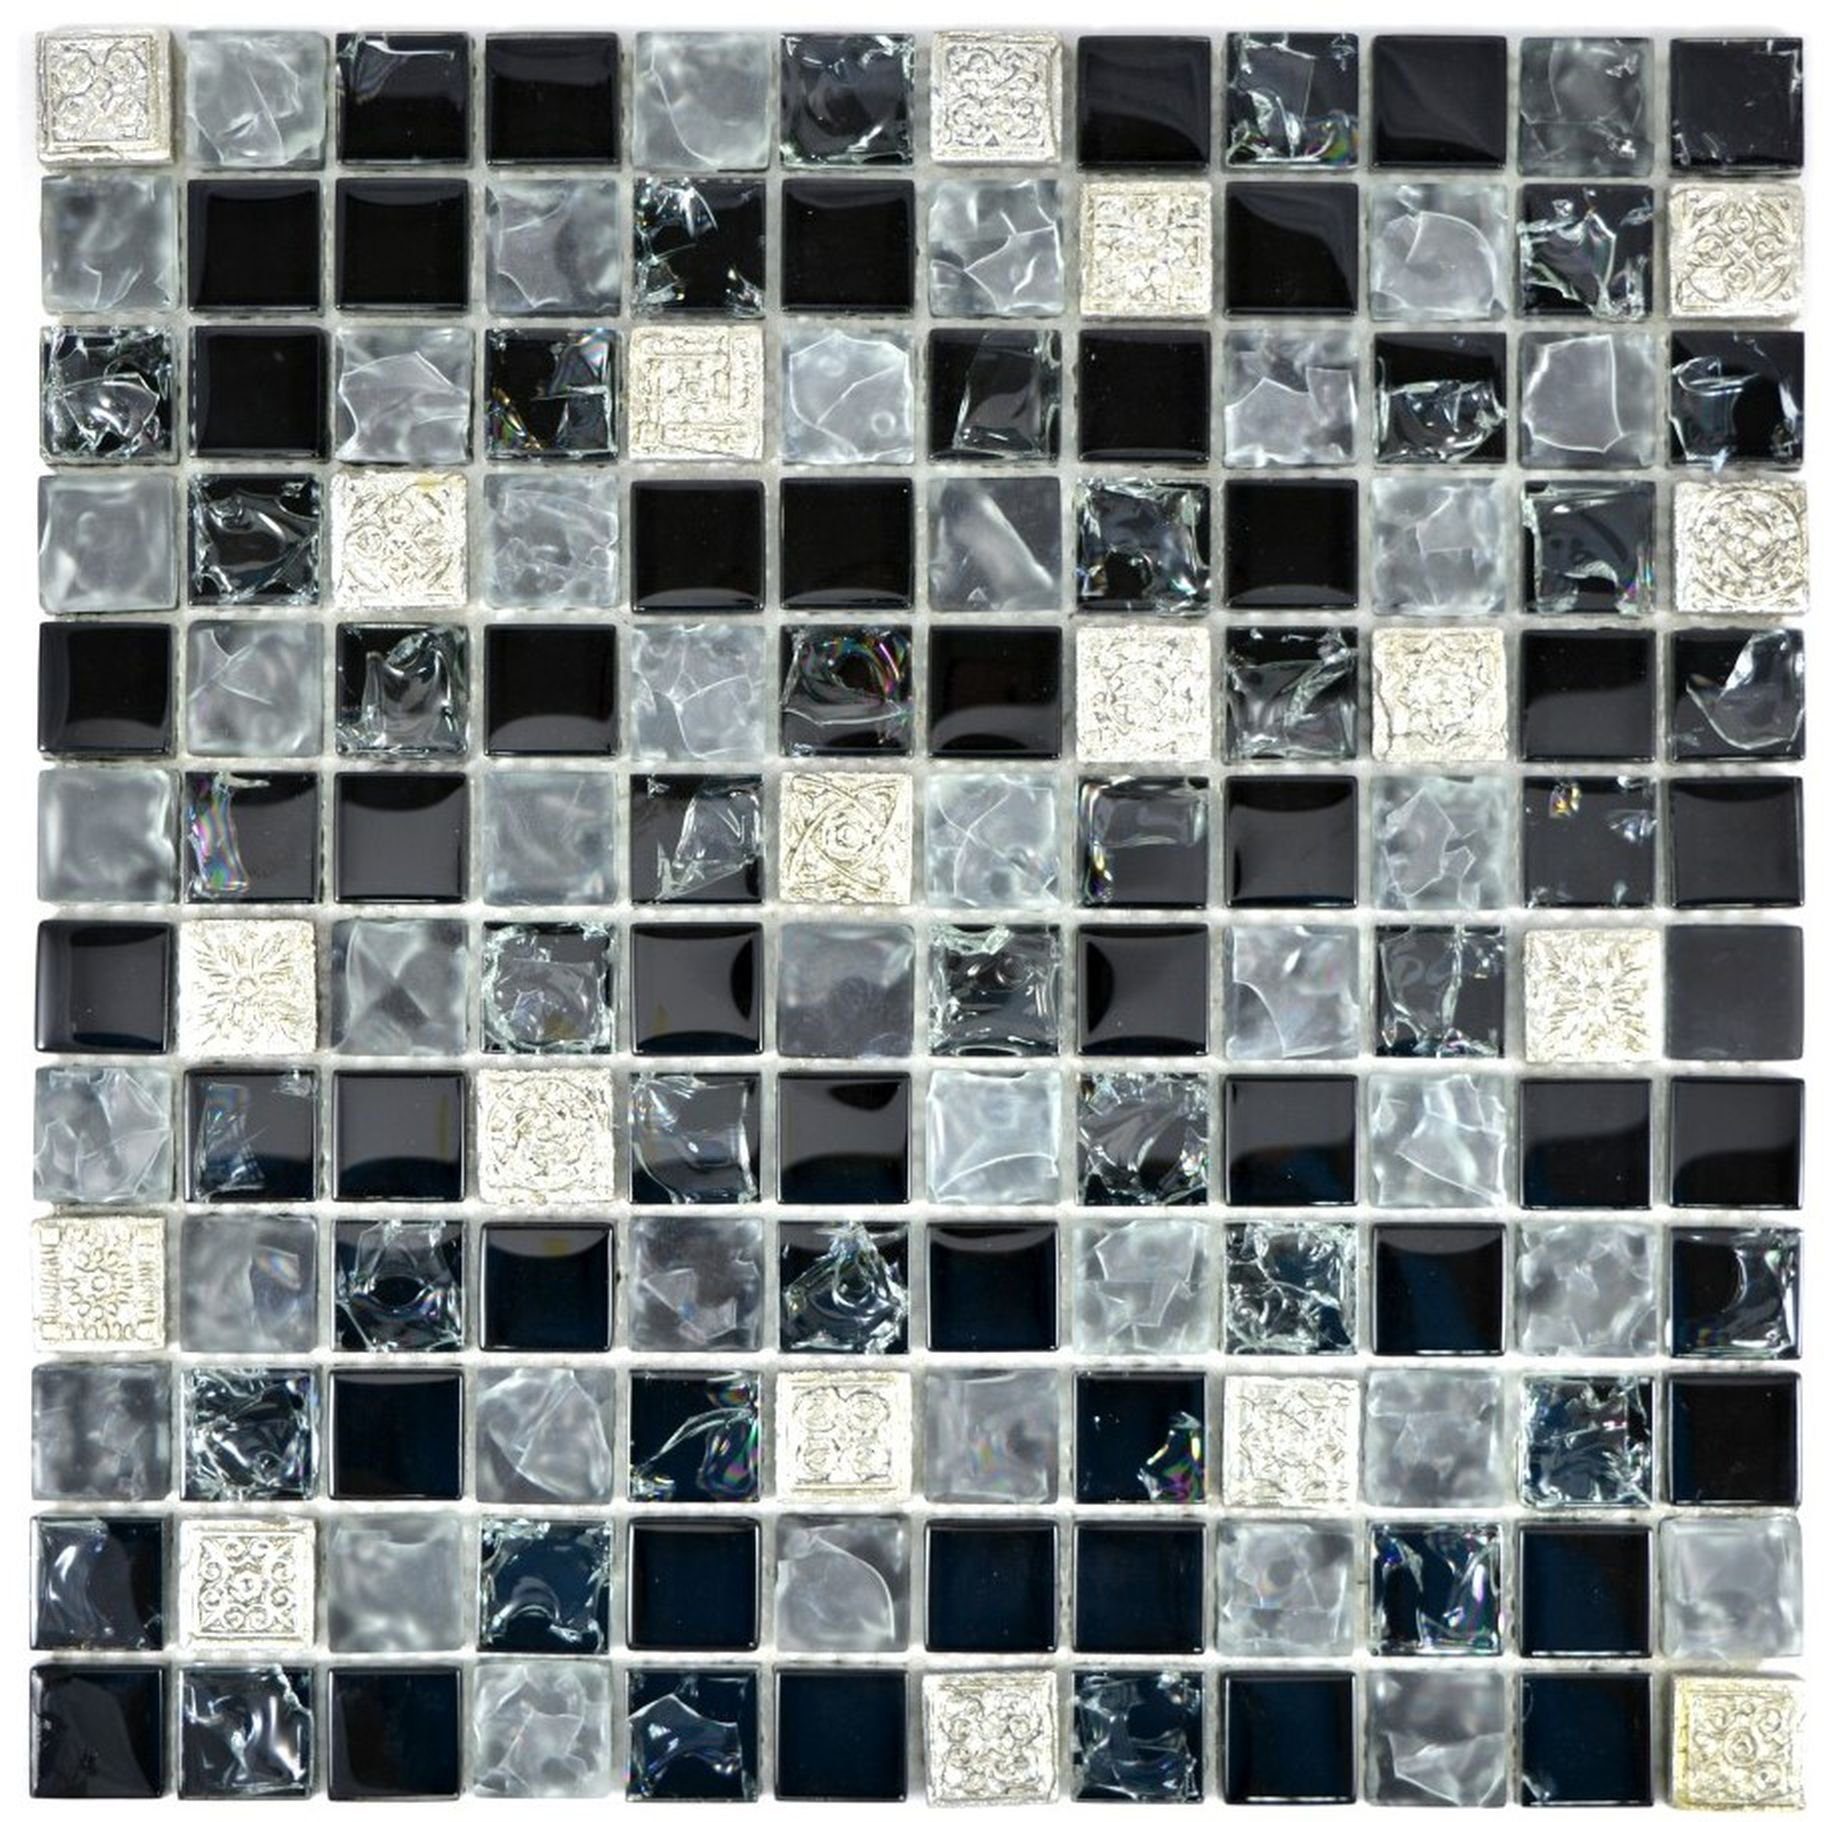 Mosani Mosaikfliesen Glasmosaik Mosaikfliesen grau gefrostet schwarz silber Resin